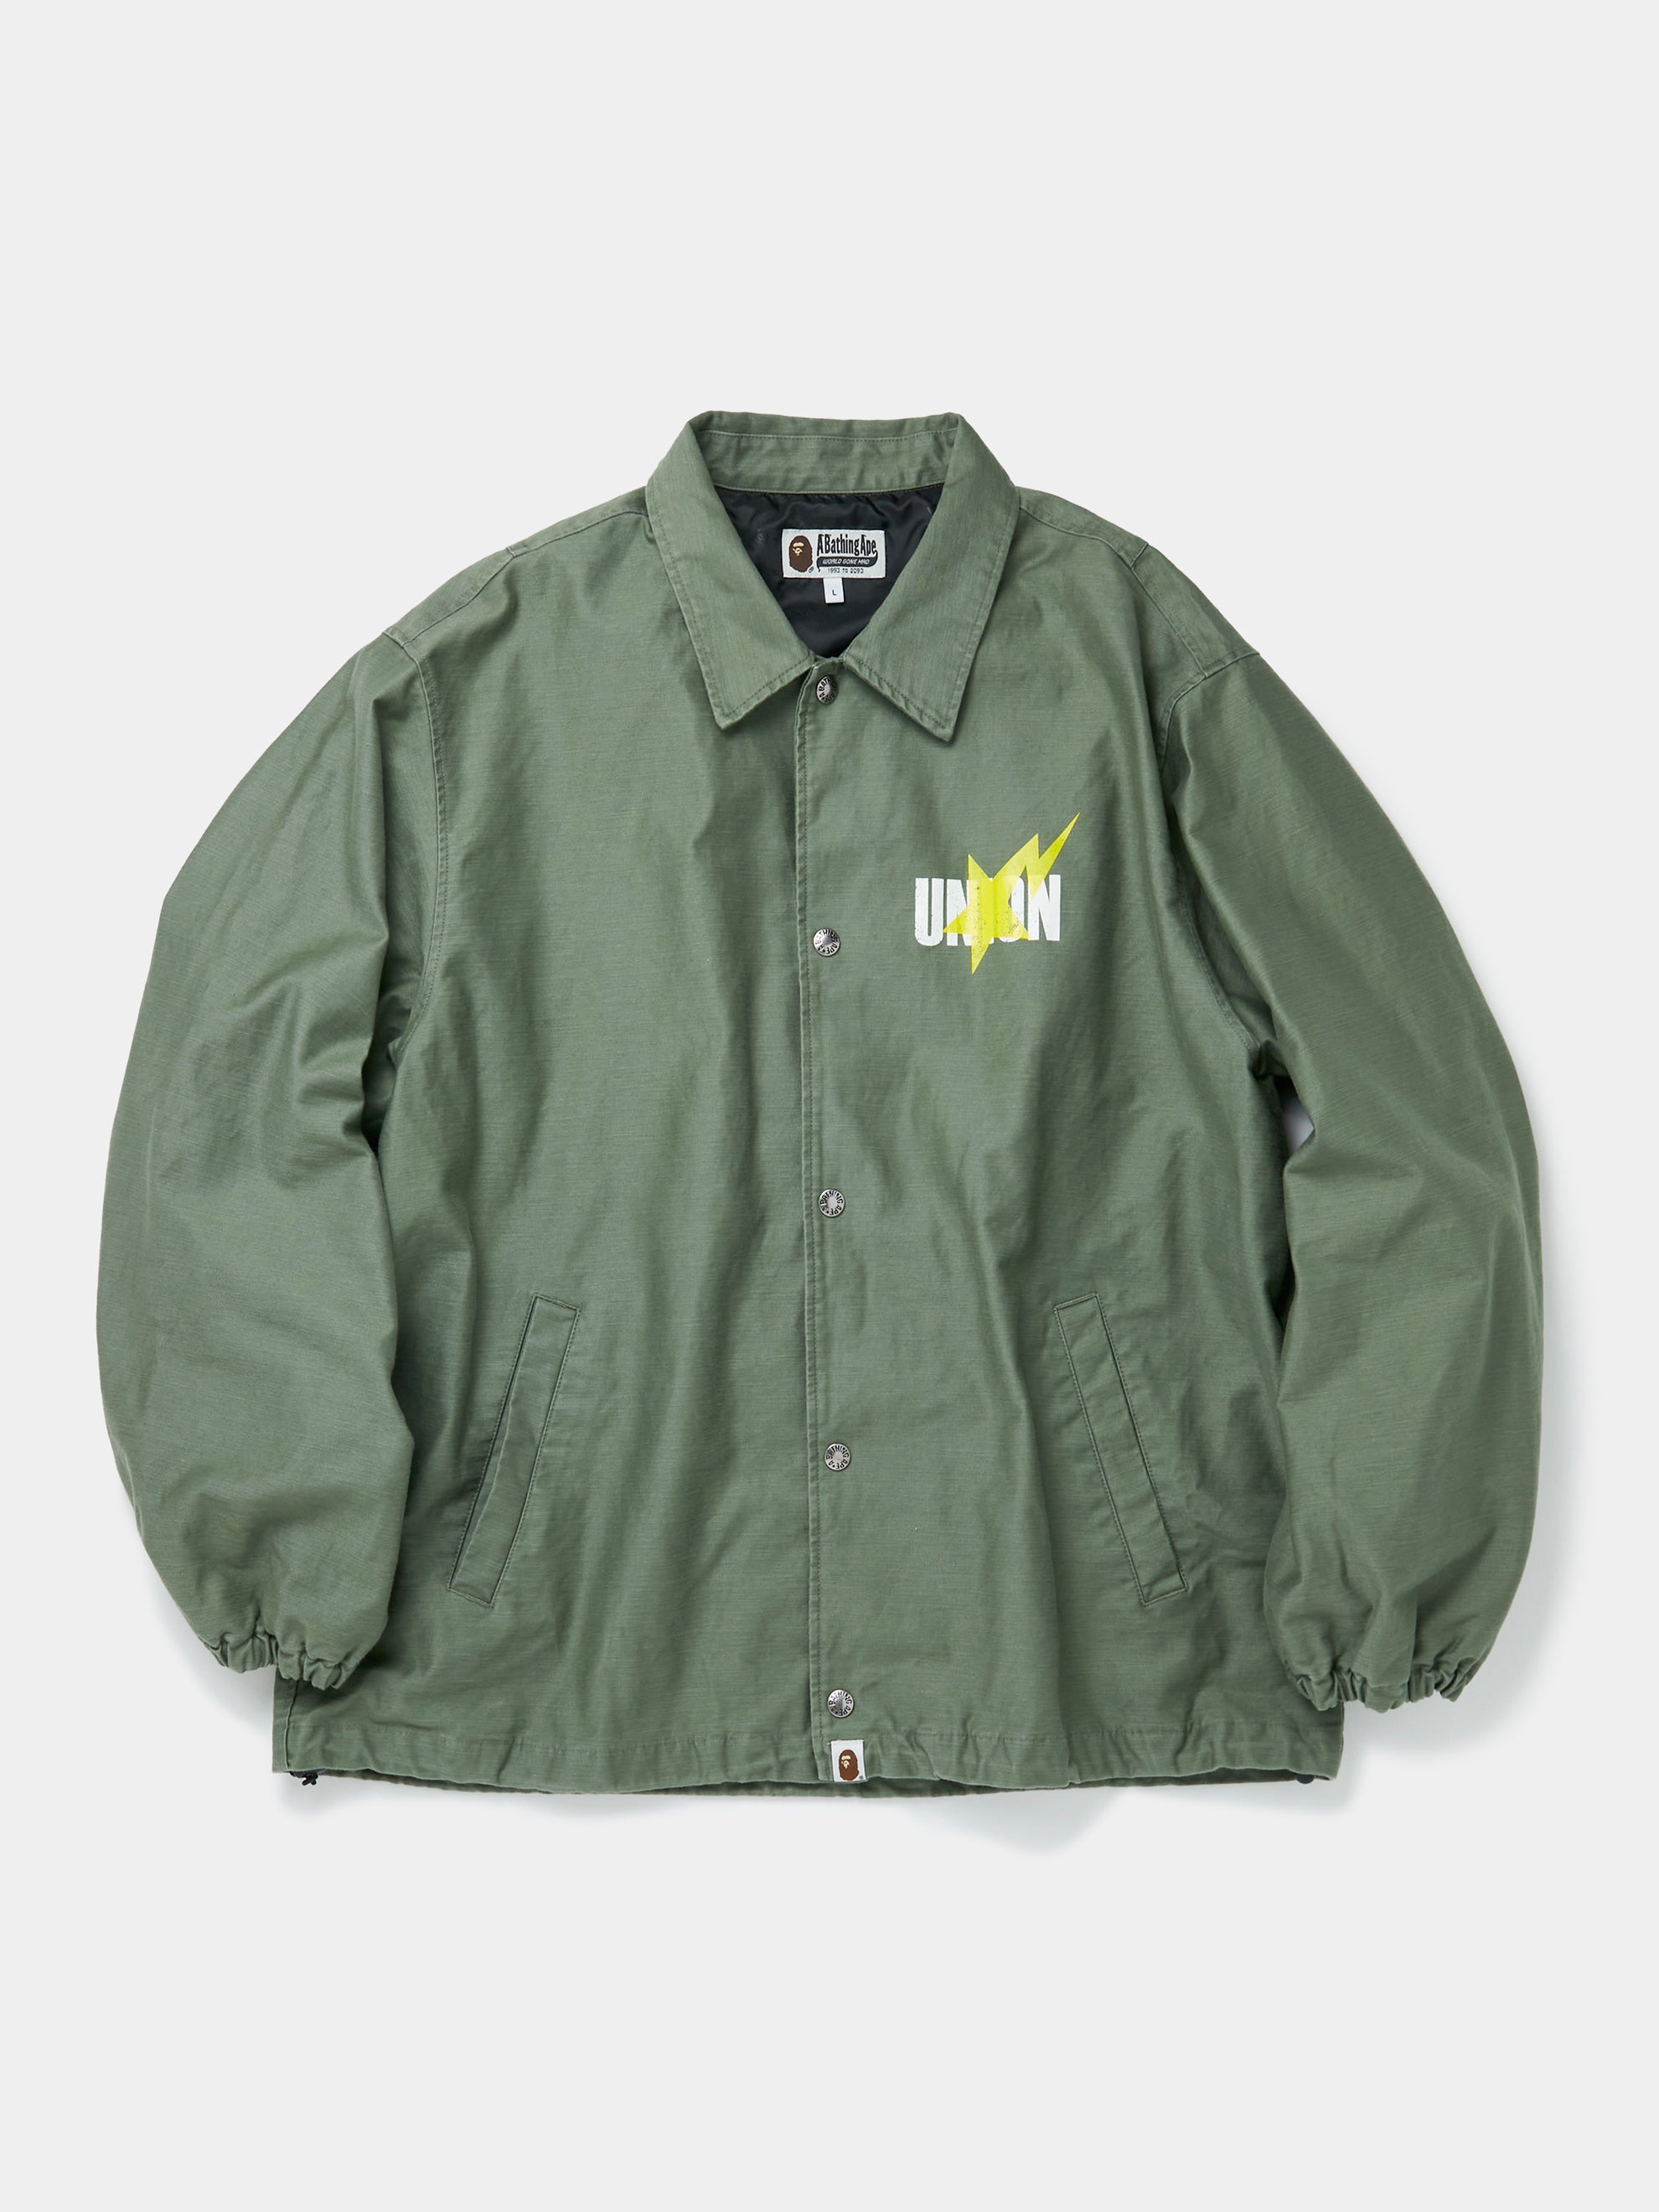 BAPE x UNION Coaches Jacket (Olive Drab)